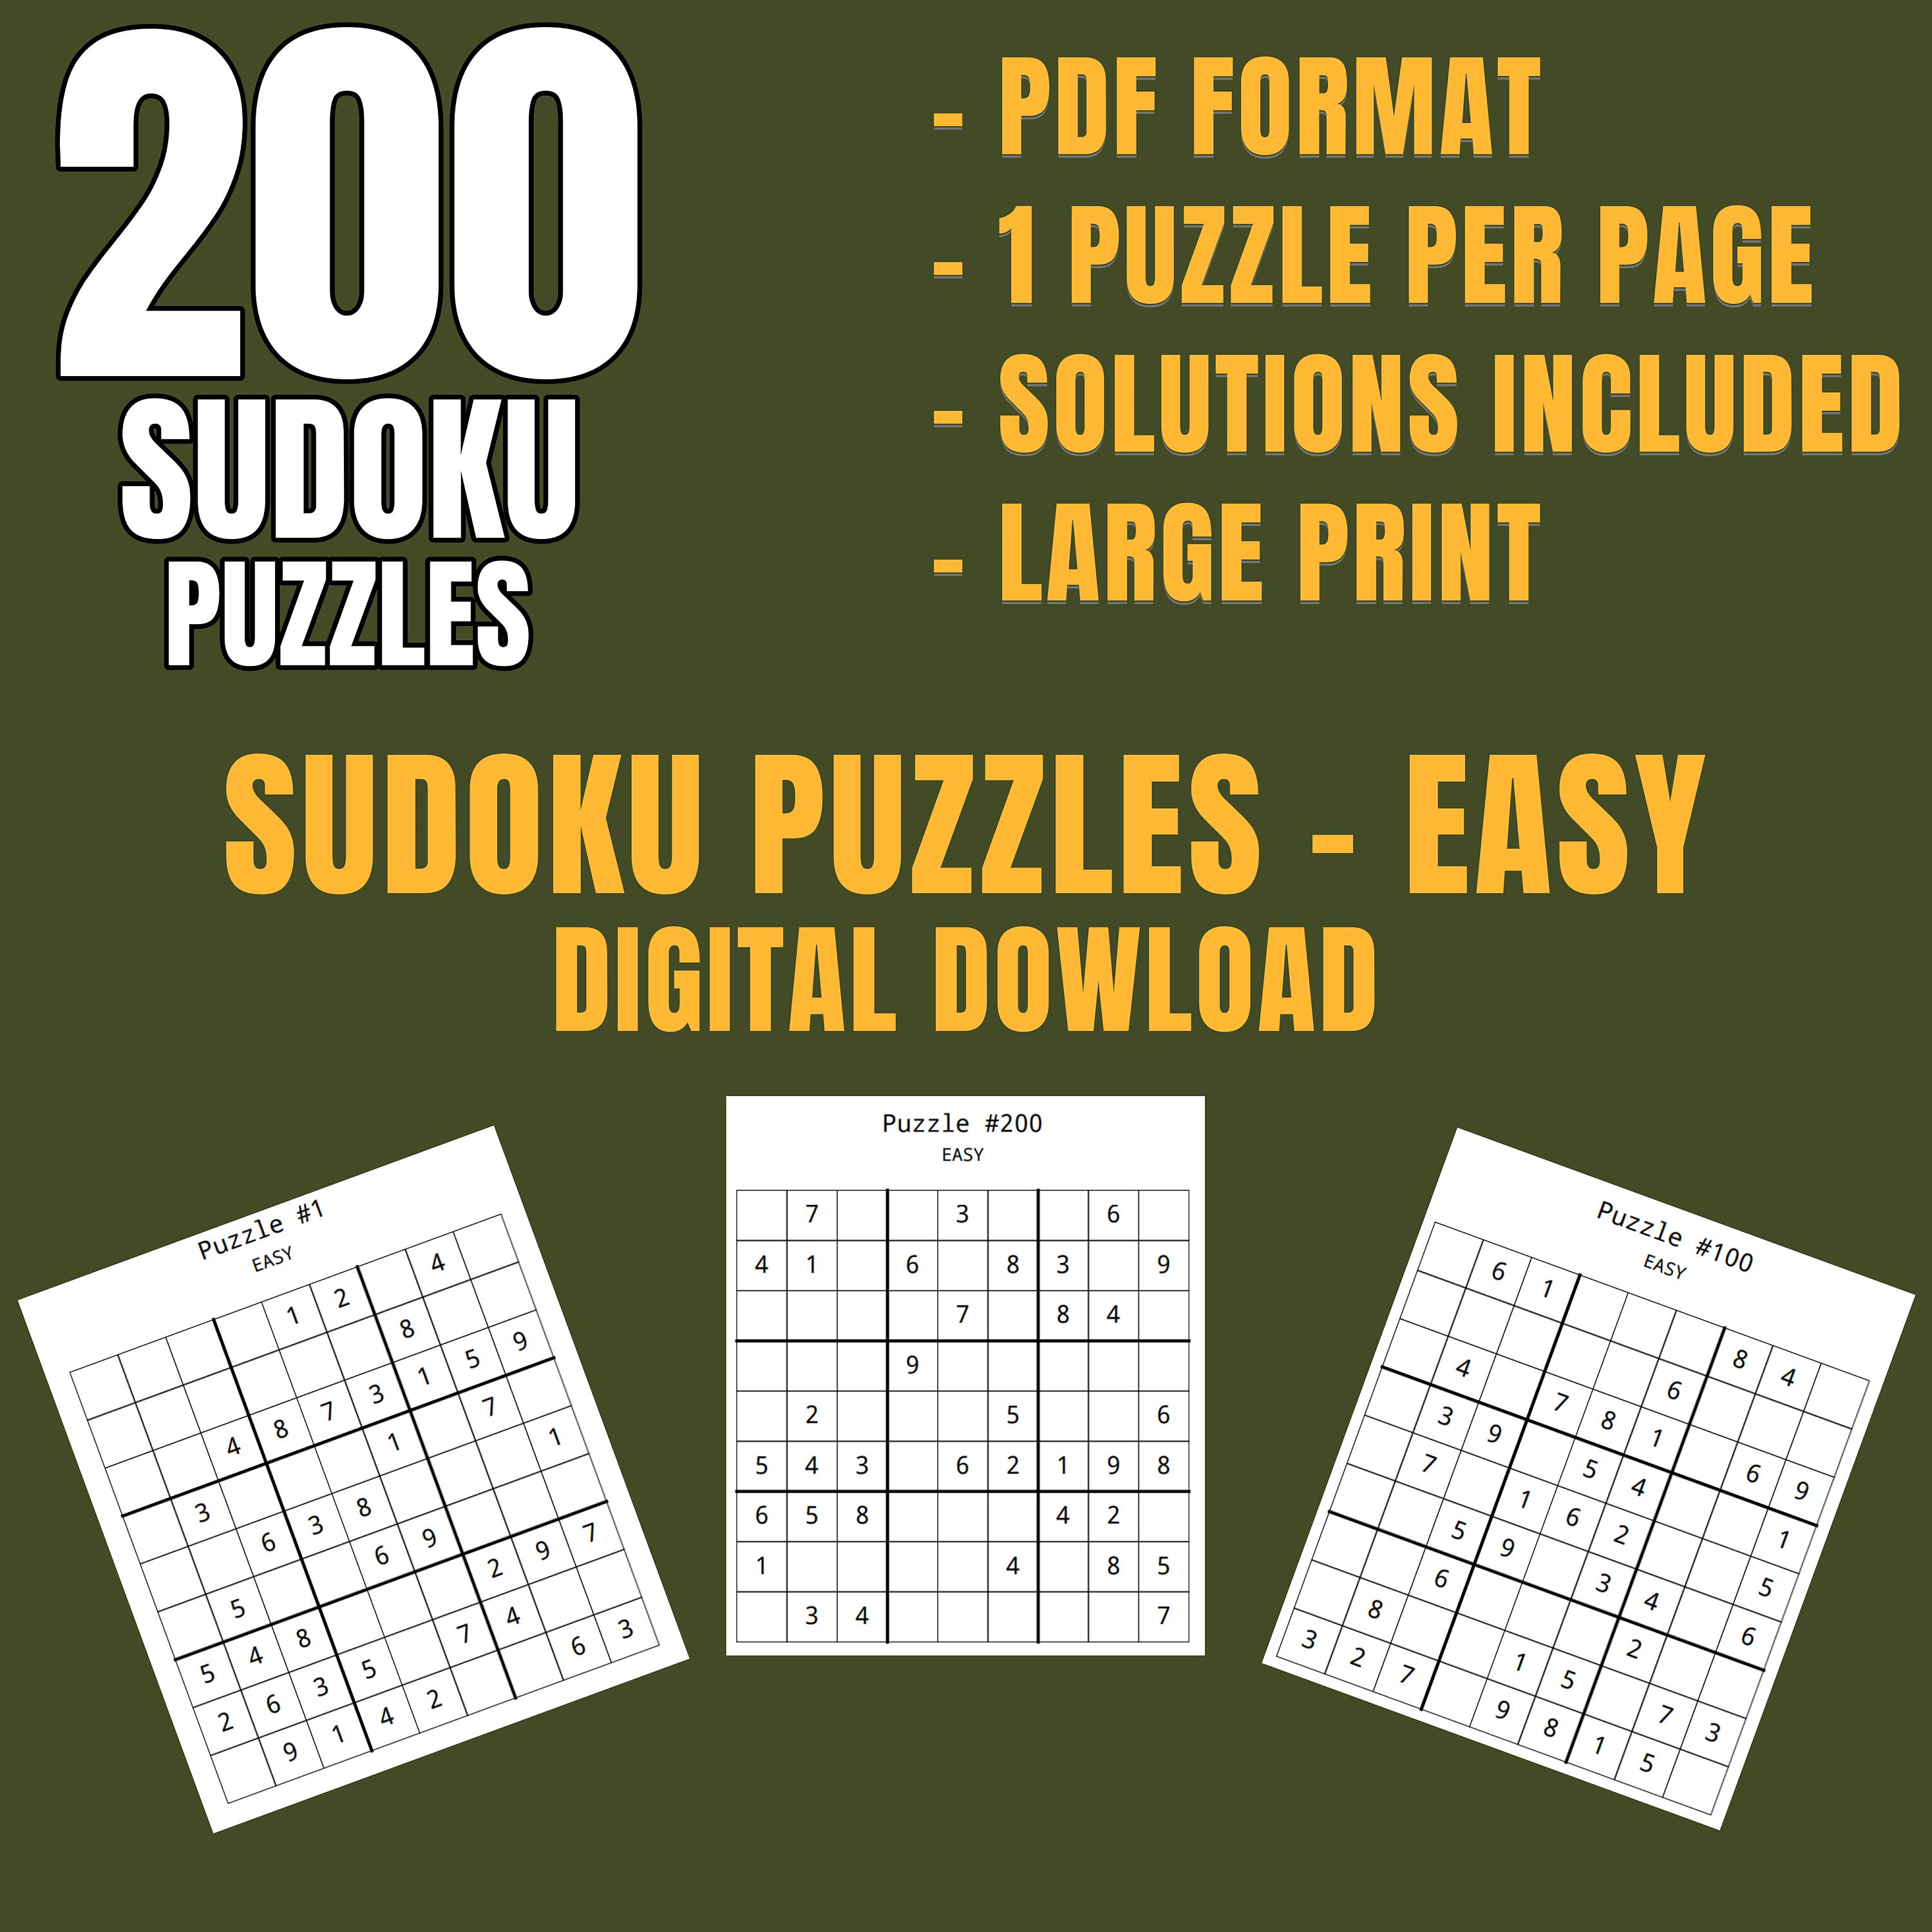 Sudoku Enfant 6-8 ans: 120 Puzzles Sudokus pour enfants de 6 à 8 ans - avec  solutions à la fin (Paperback) 